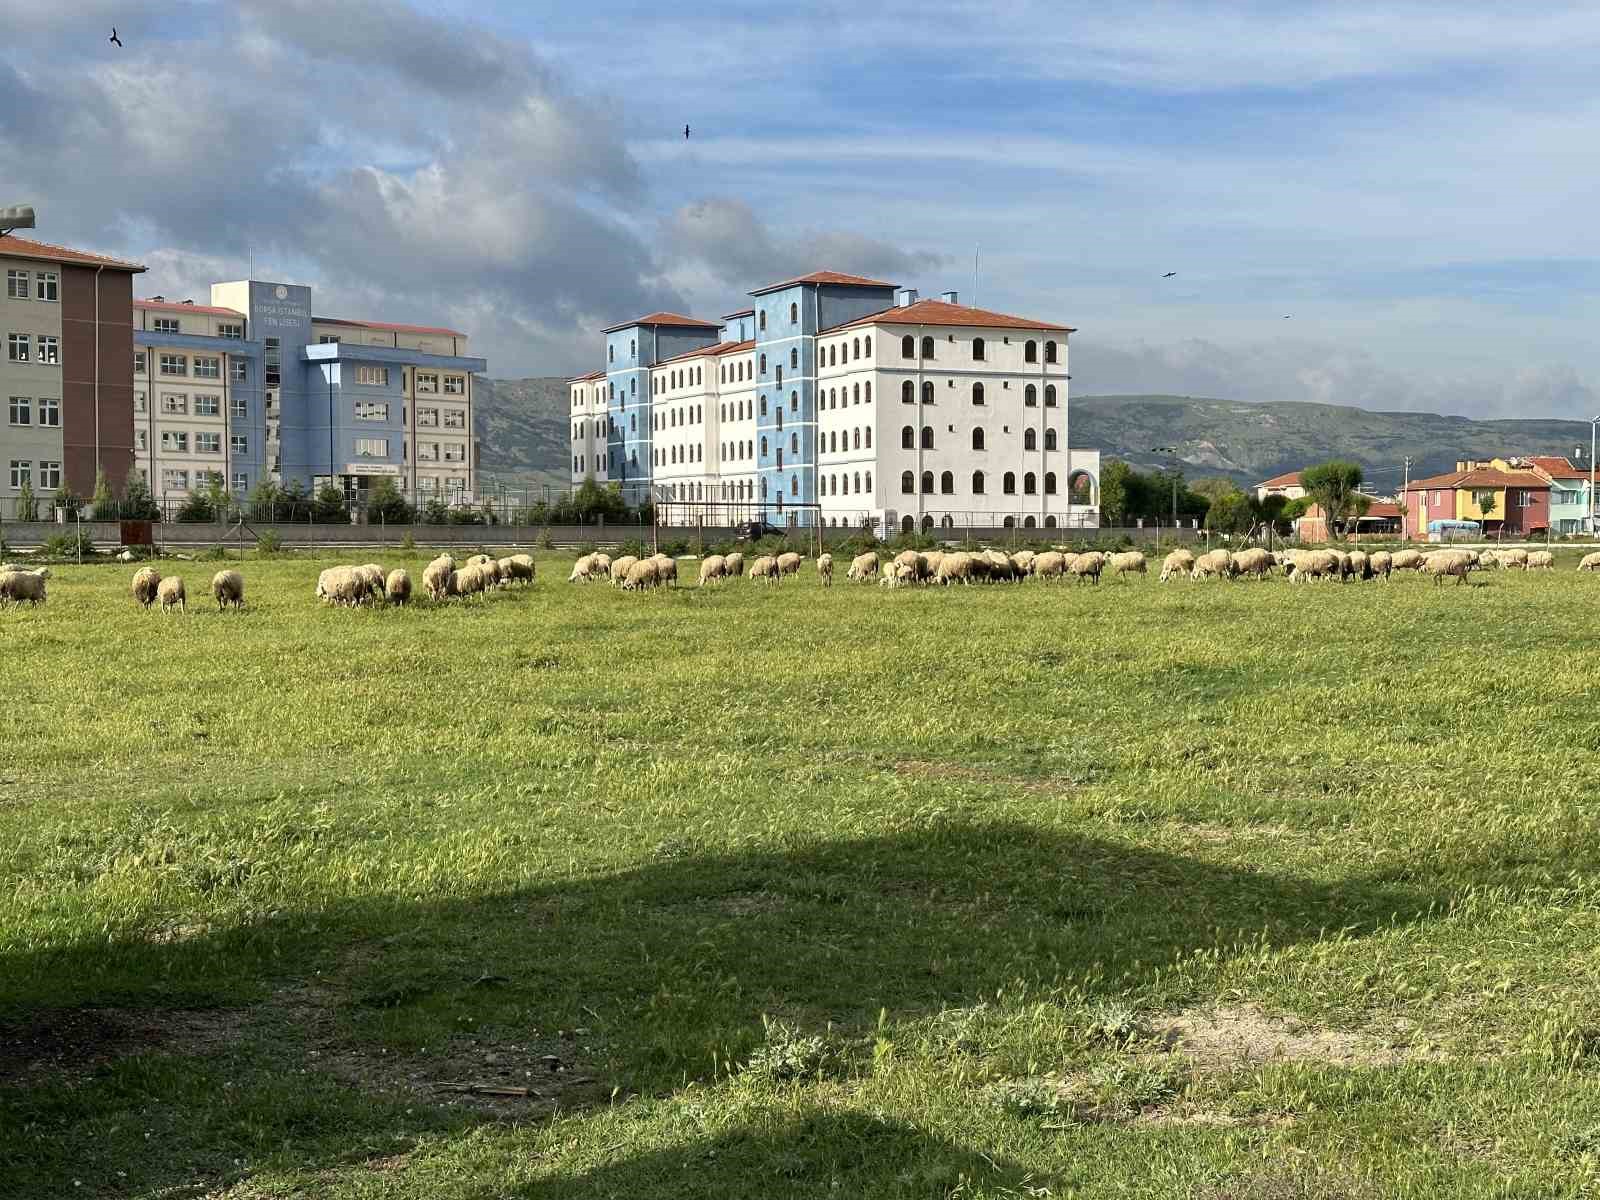 Eski futbol sahası koyunların otlama yeri oldu